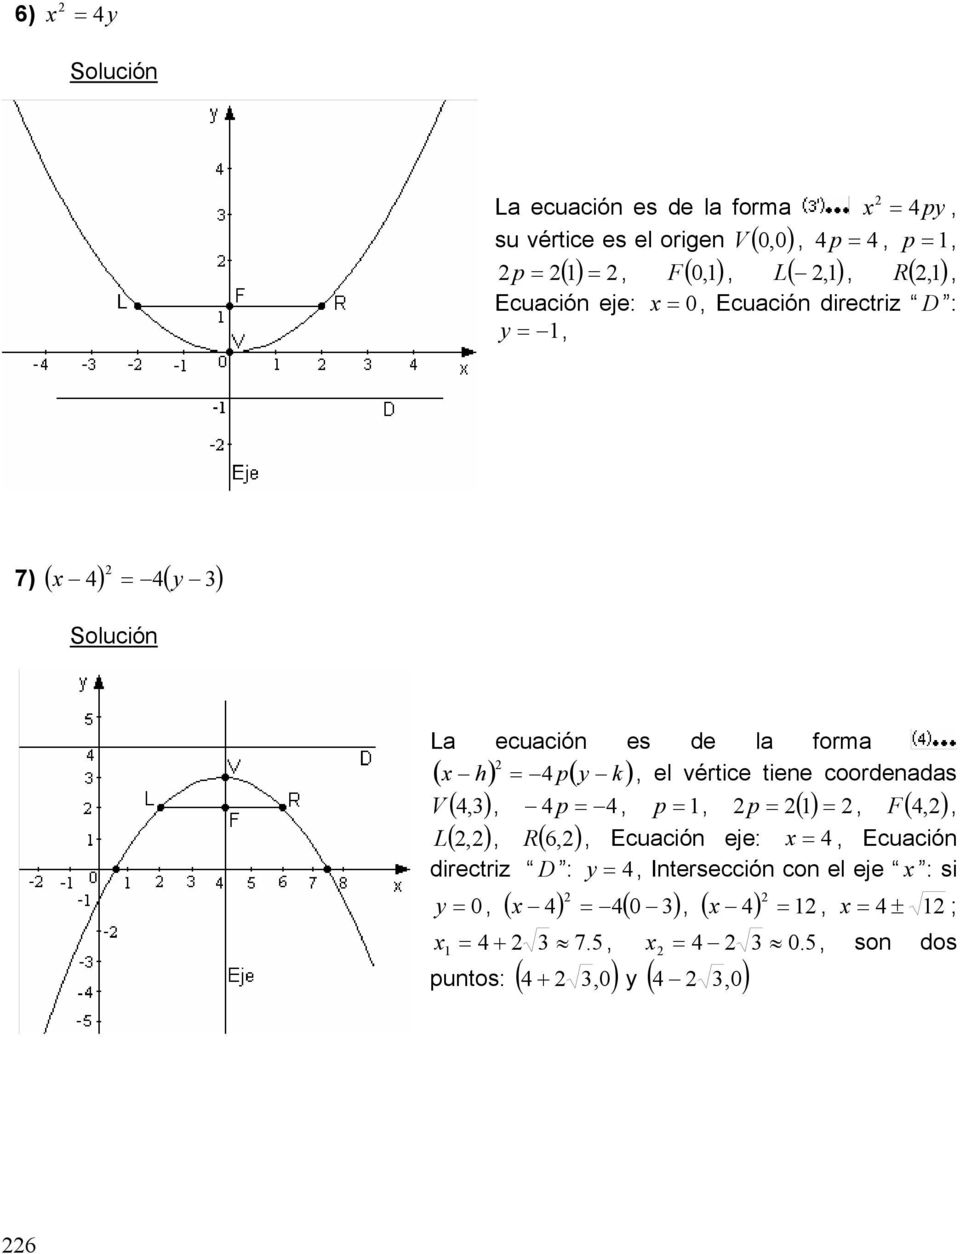 el vértice tiene coordenadas V (,), p, p, p (), F (,), L (,), R ( 6,), Ecuación eje:, Ecuación